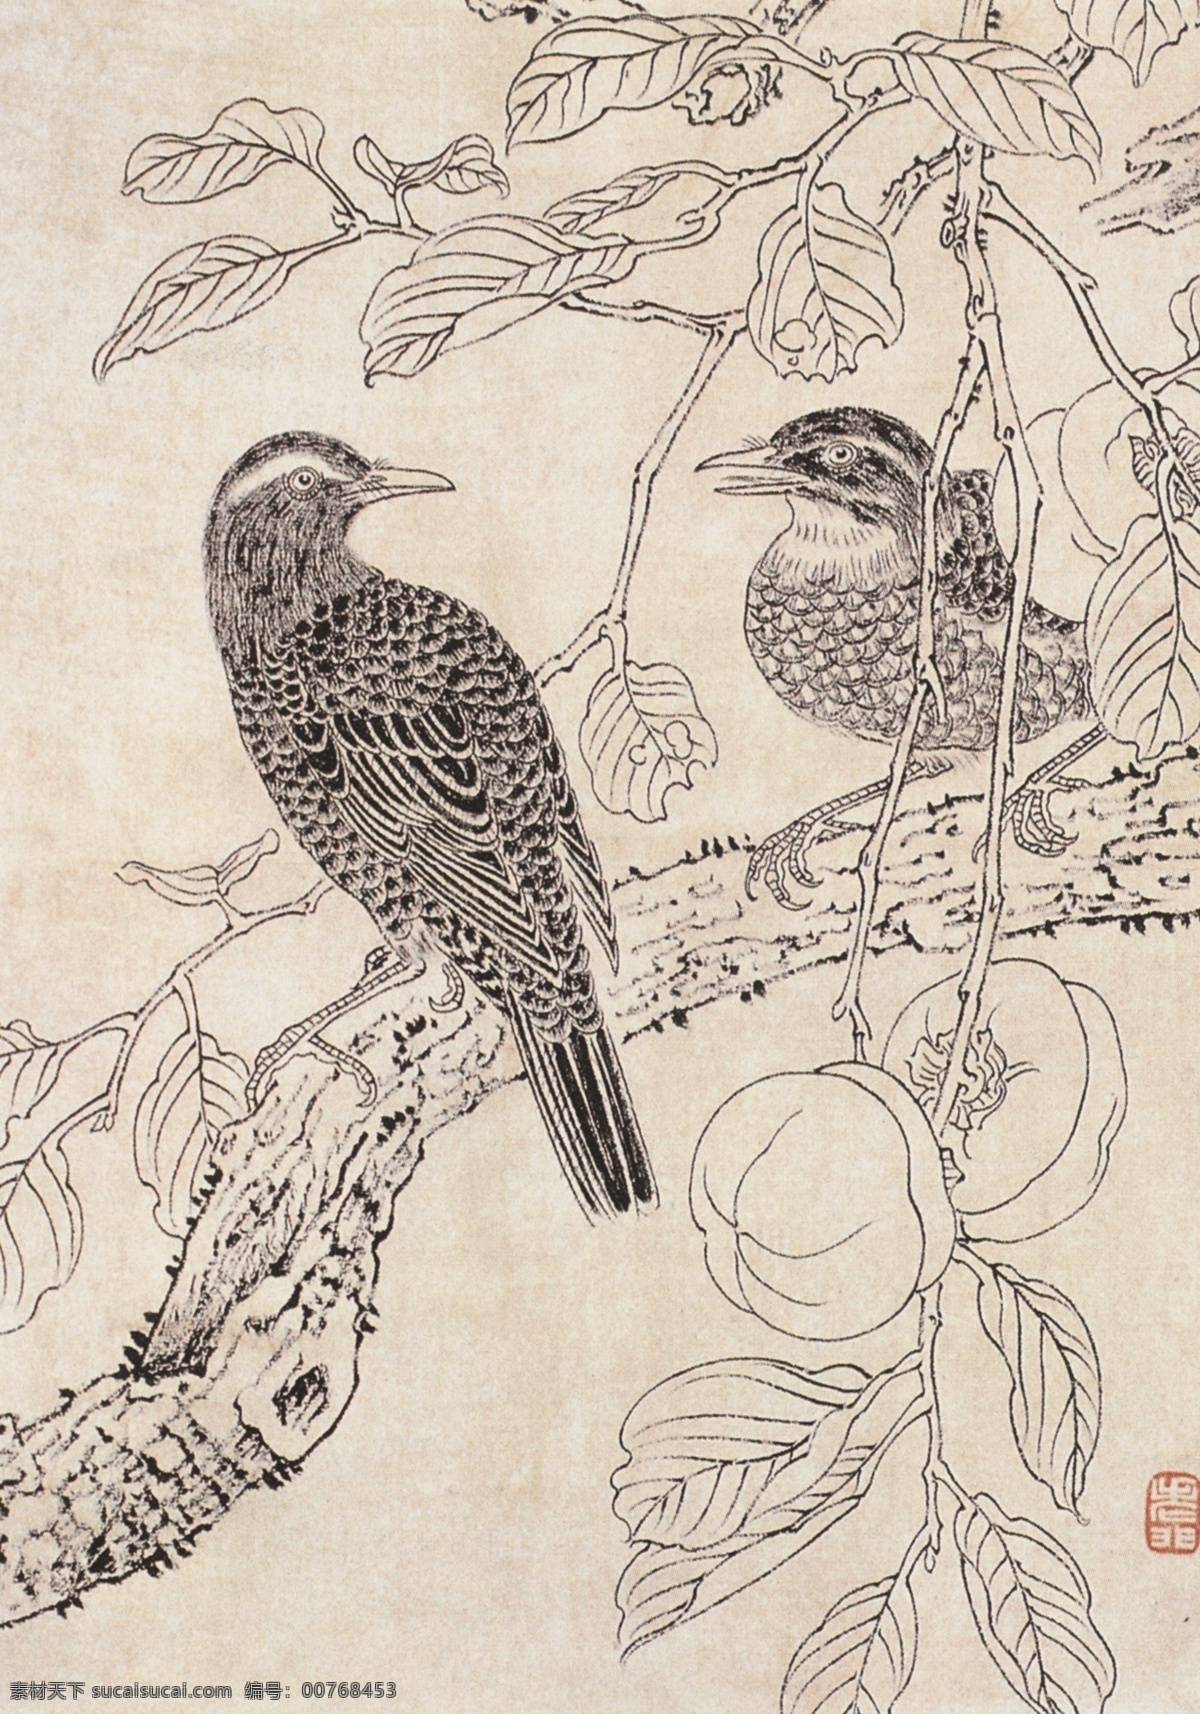 非 闇 花鸟 写生 画稿 于非闇 工笔 美术 大师 工笔画 鸟 树枝 绘画书法 文化艺术